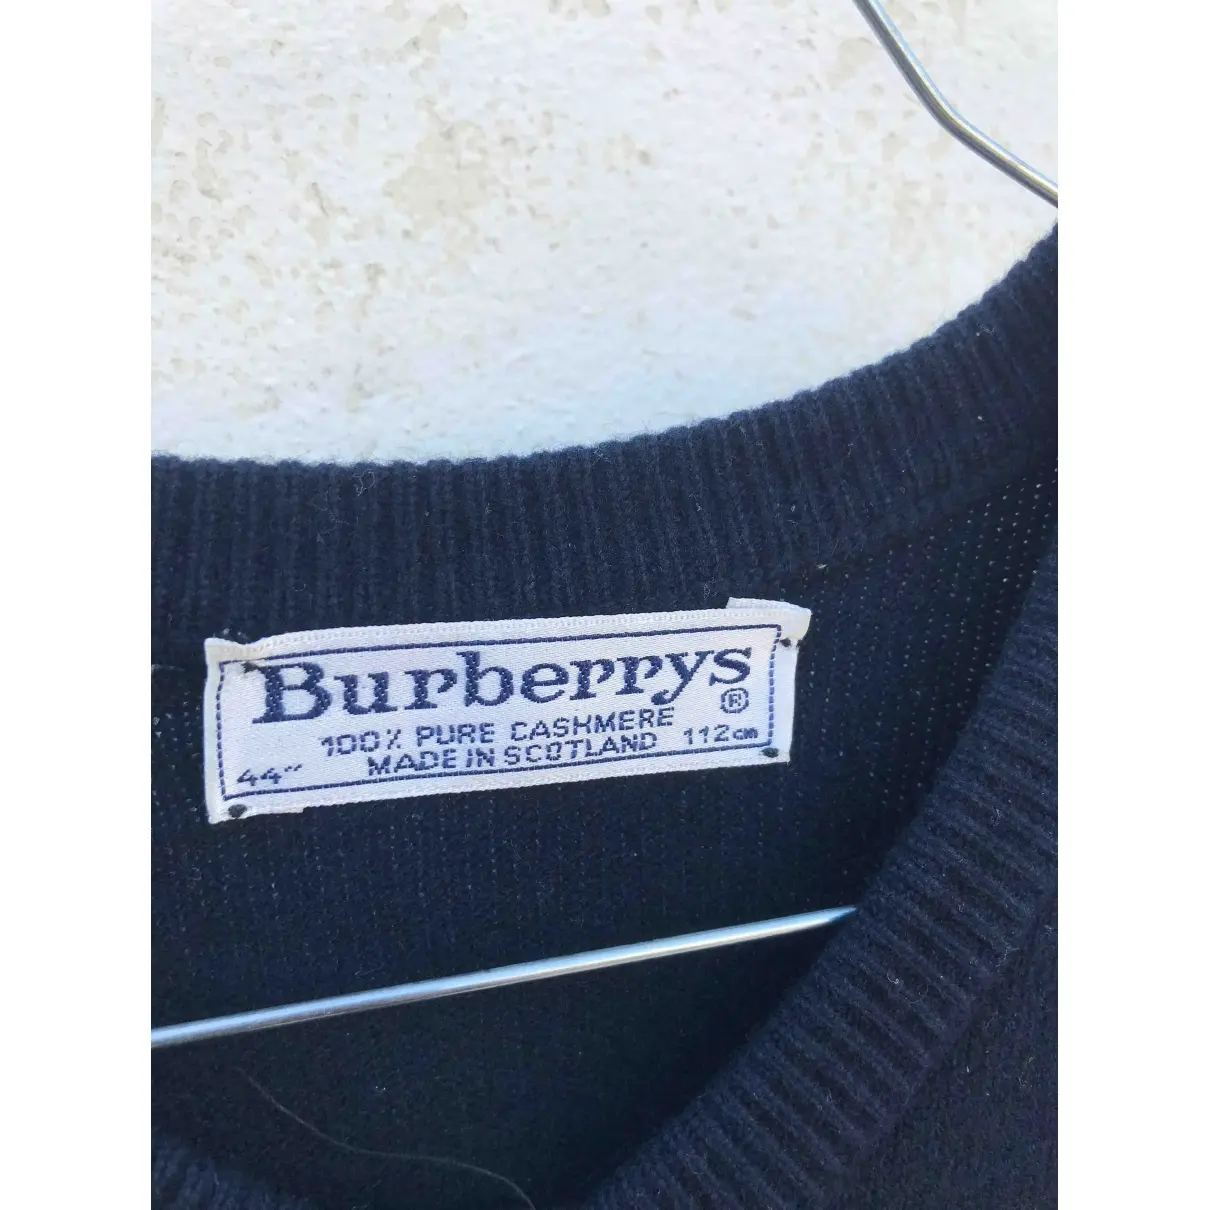 Burberry Cashmere jumper for sale - Vintage